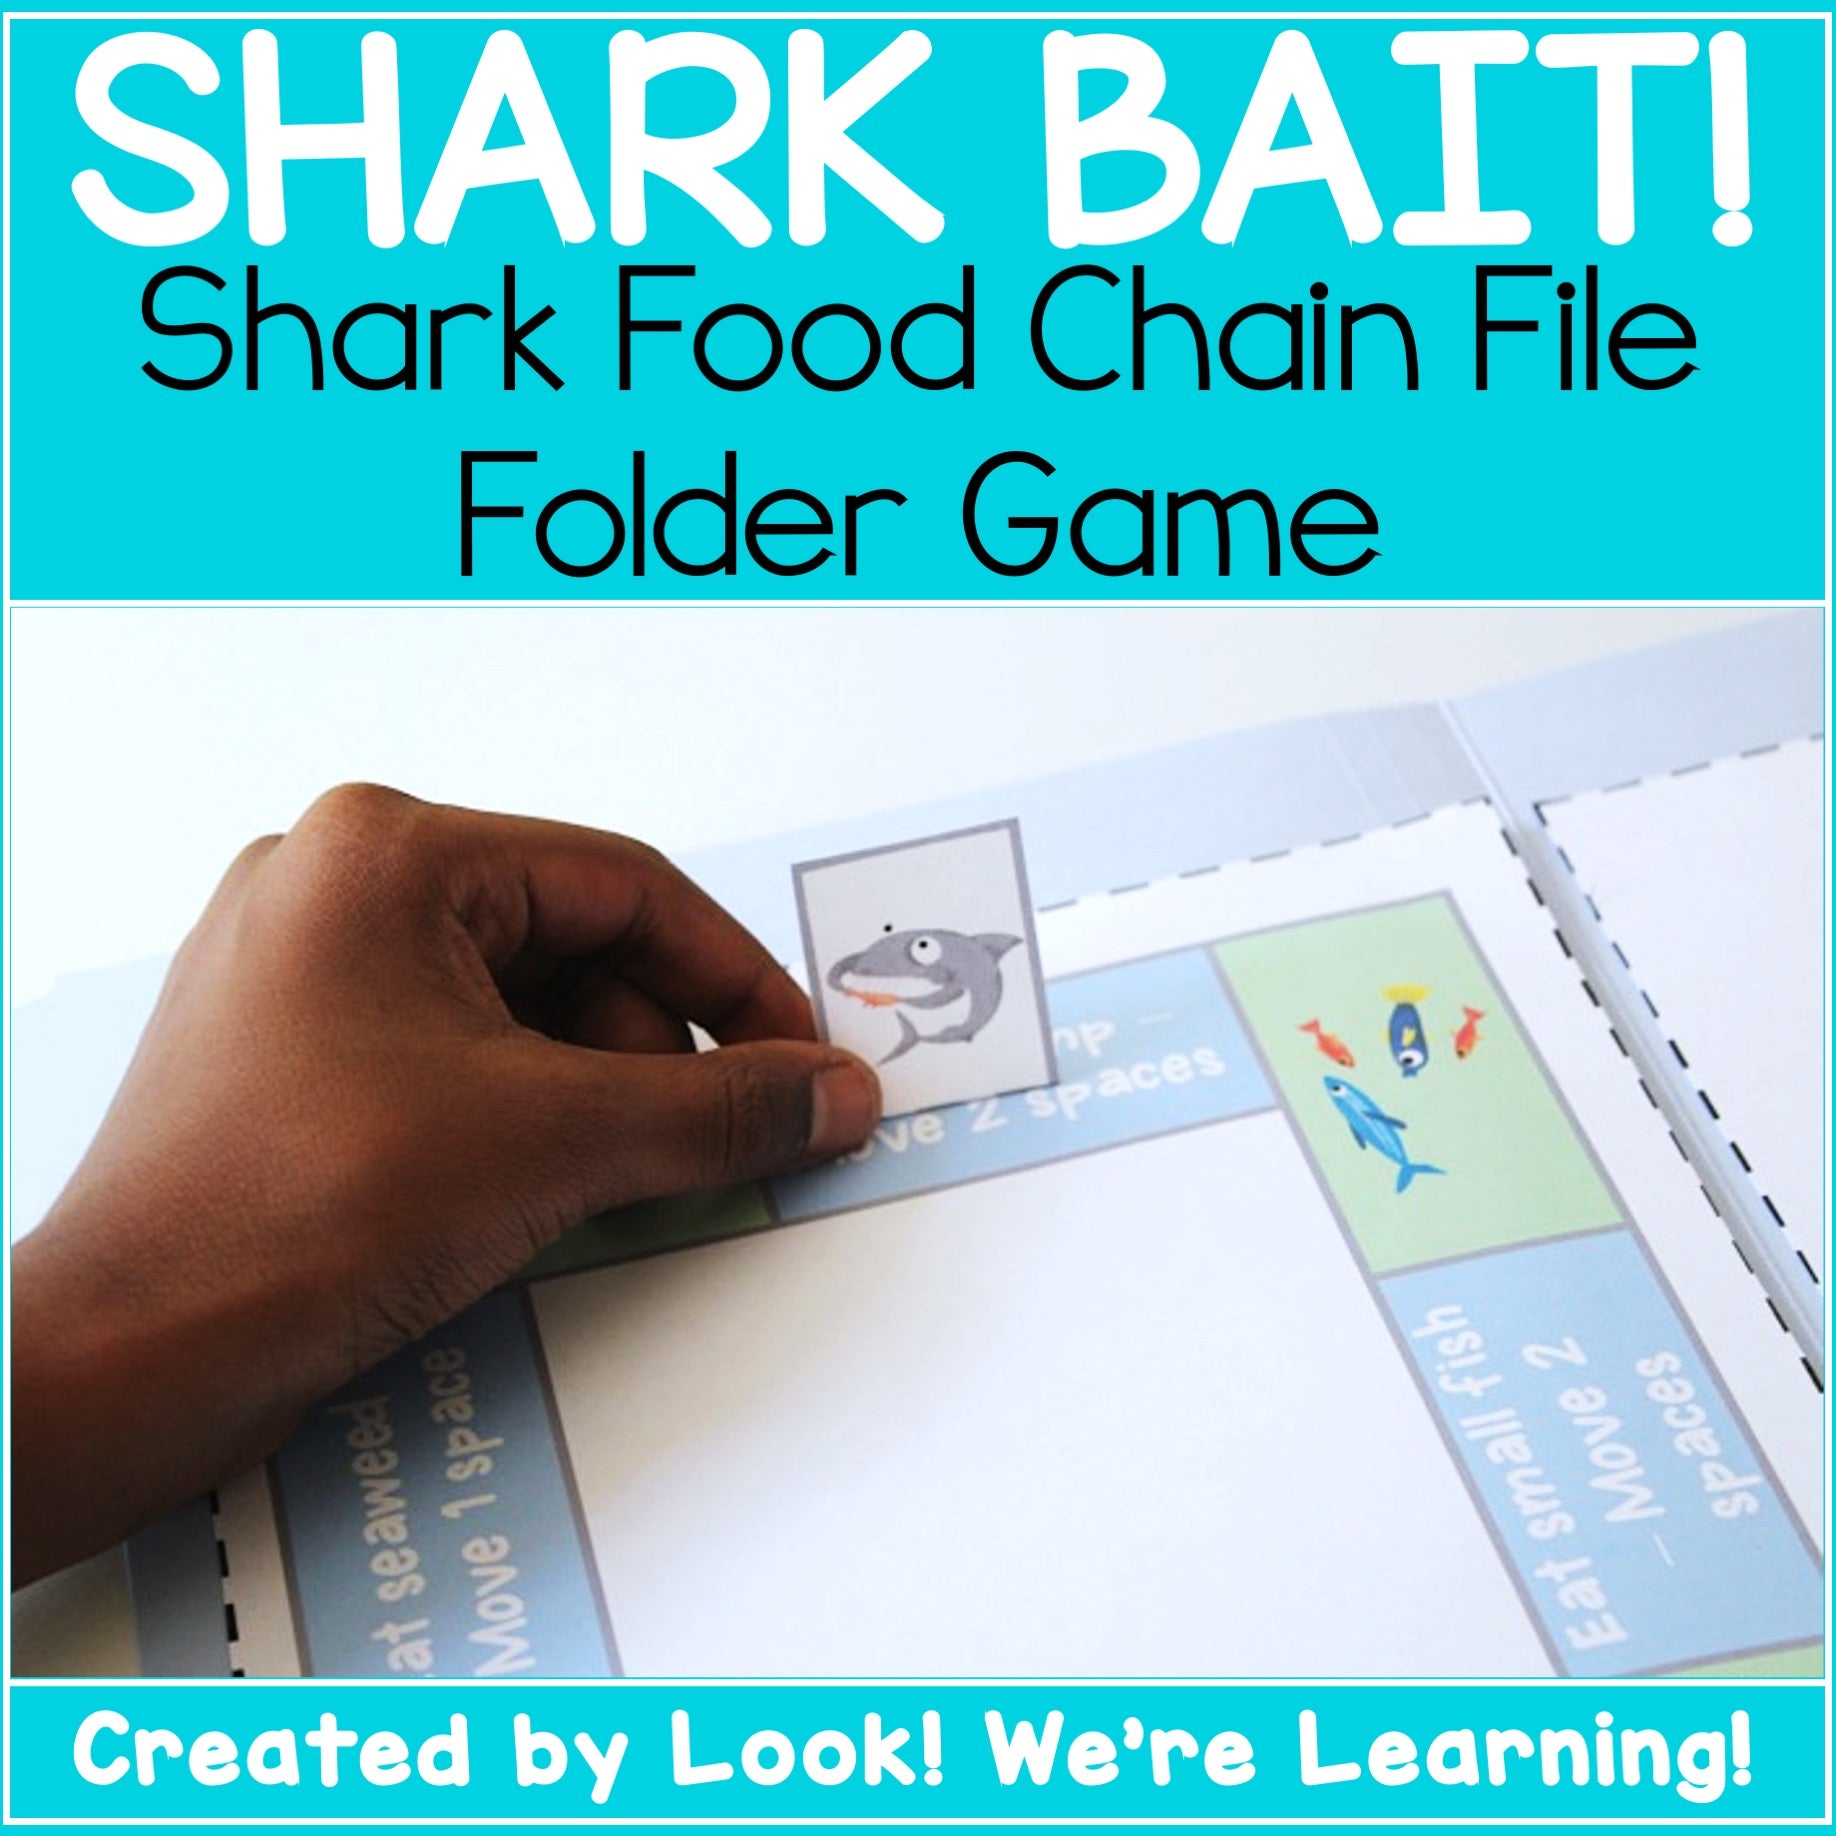 Shark Bait! Shark Food Chain File Folder Game